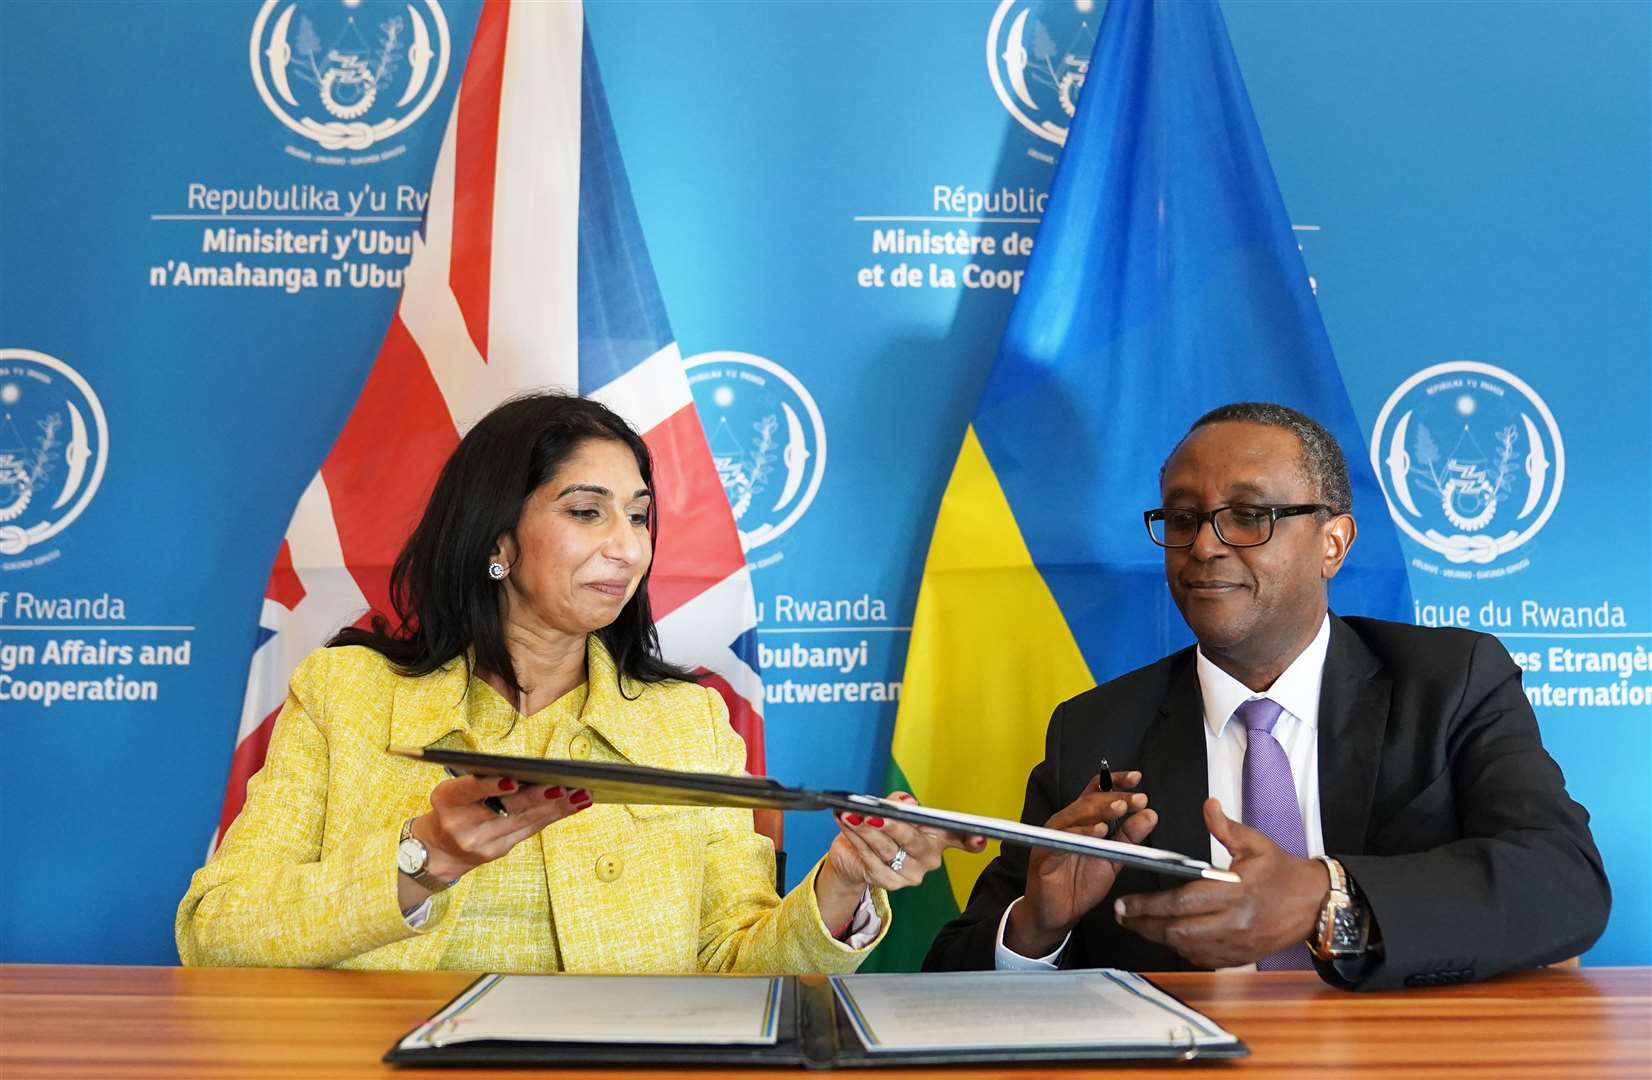 Former home secretary Suella Braverman described the Rwanda plan as ‘fatally flawed’ (Stefan Rousseau/PA)